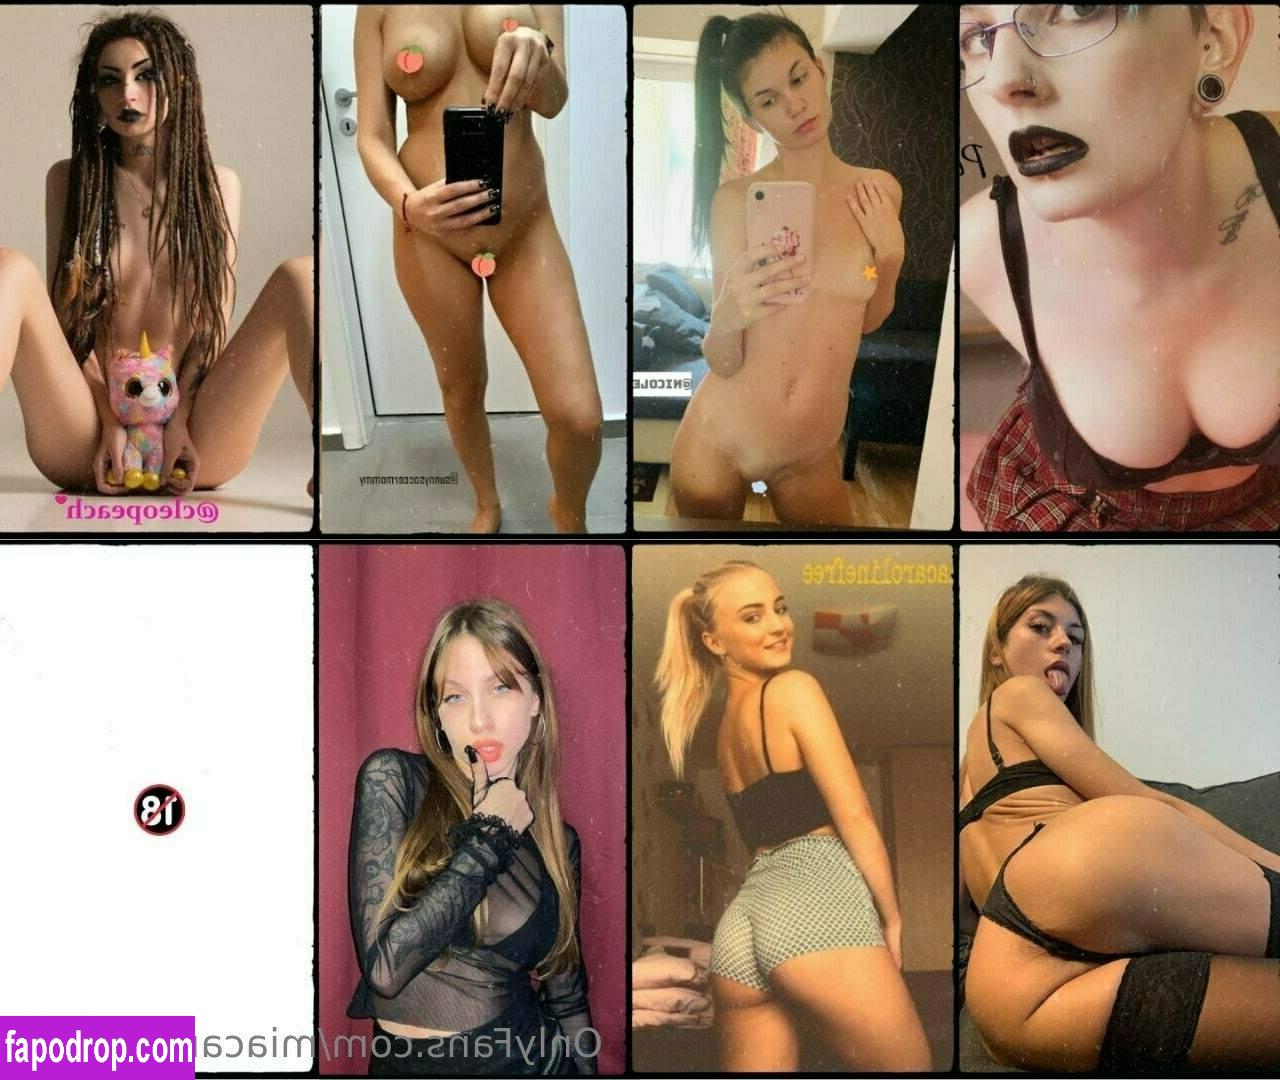 miacarolinefree / misscaroline21 leak of nude photo #0010 from OnlyFans or Patreon